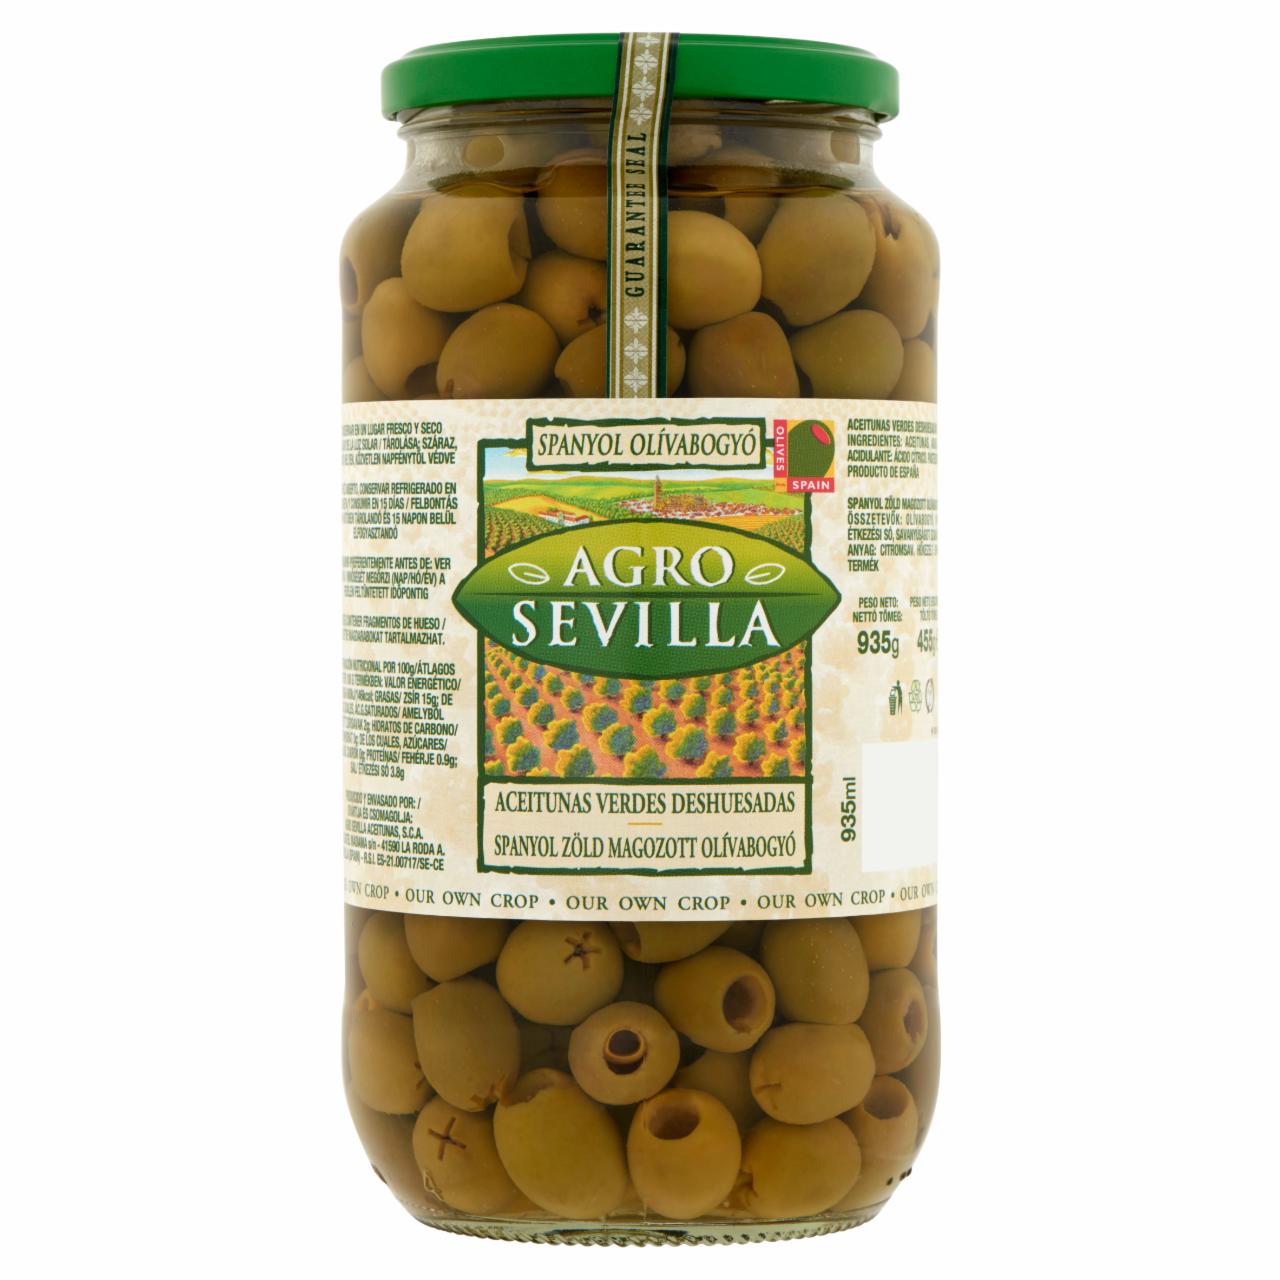 Képek - Agro Sevilla spanyol zöld magozott olívabogyó 935 g